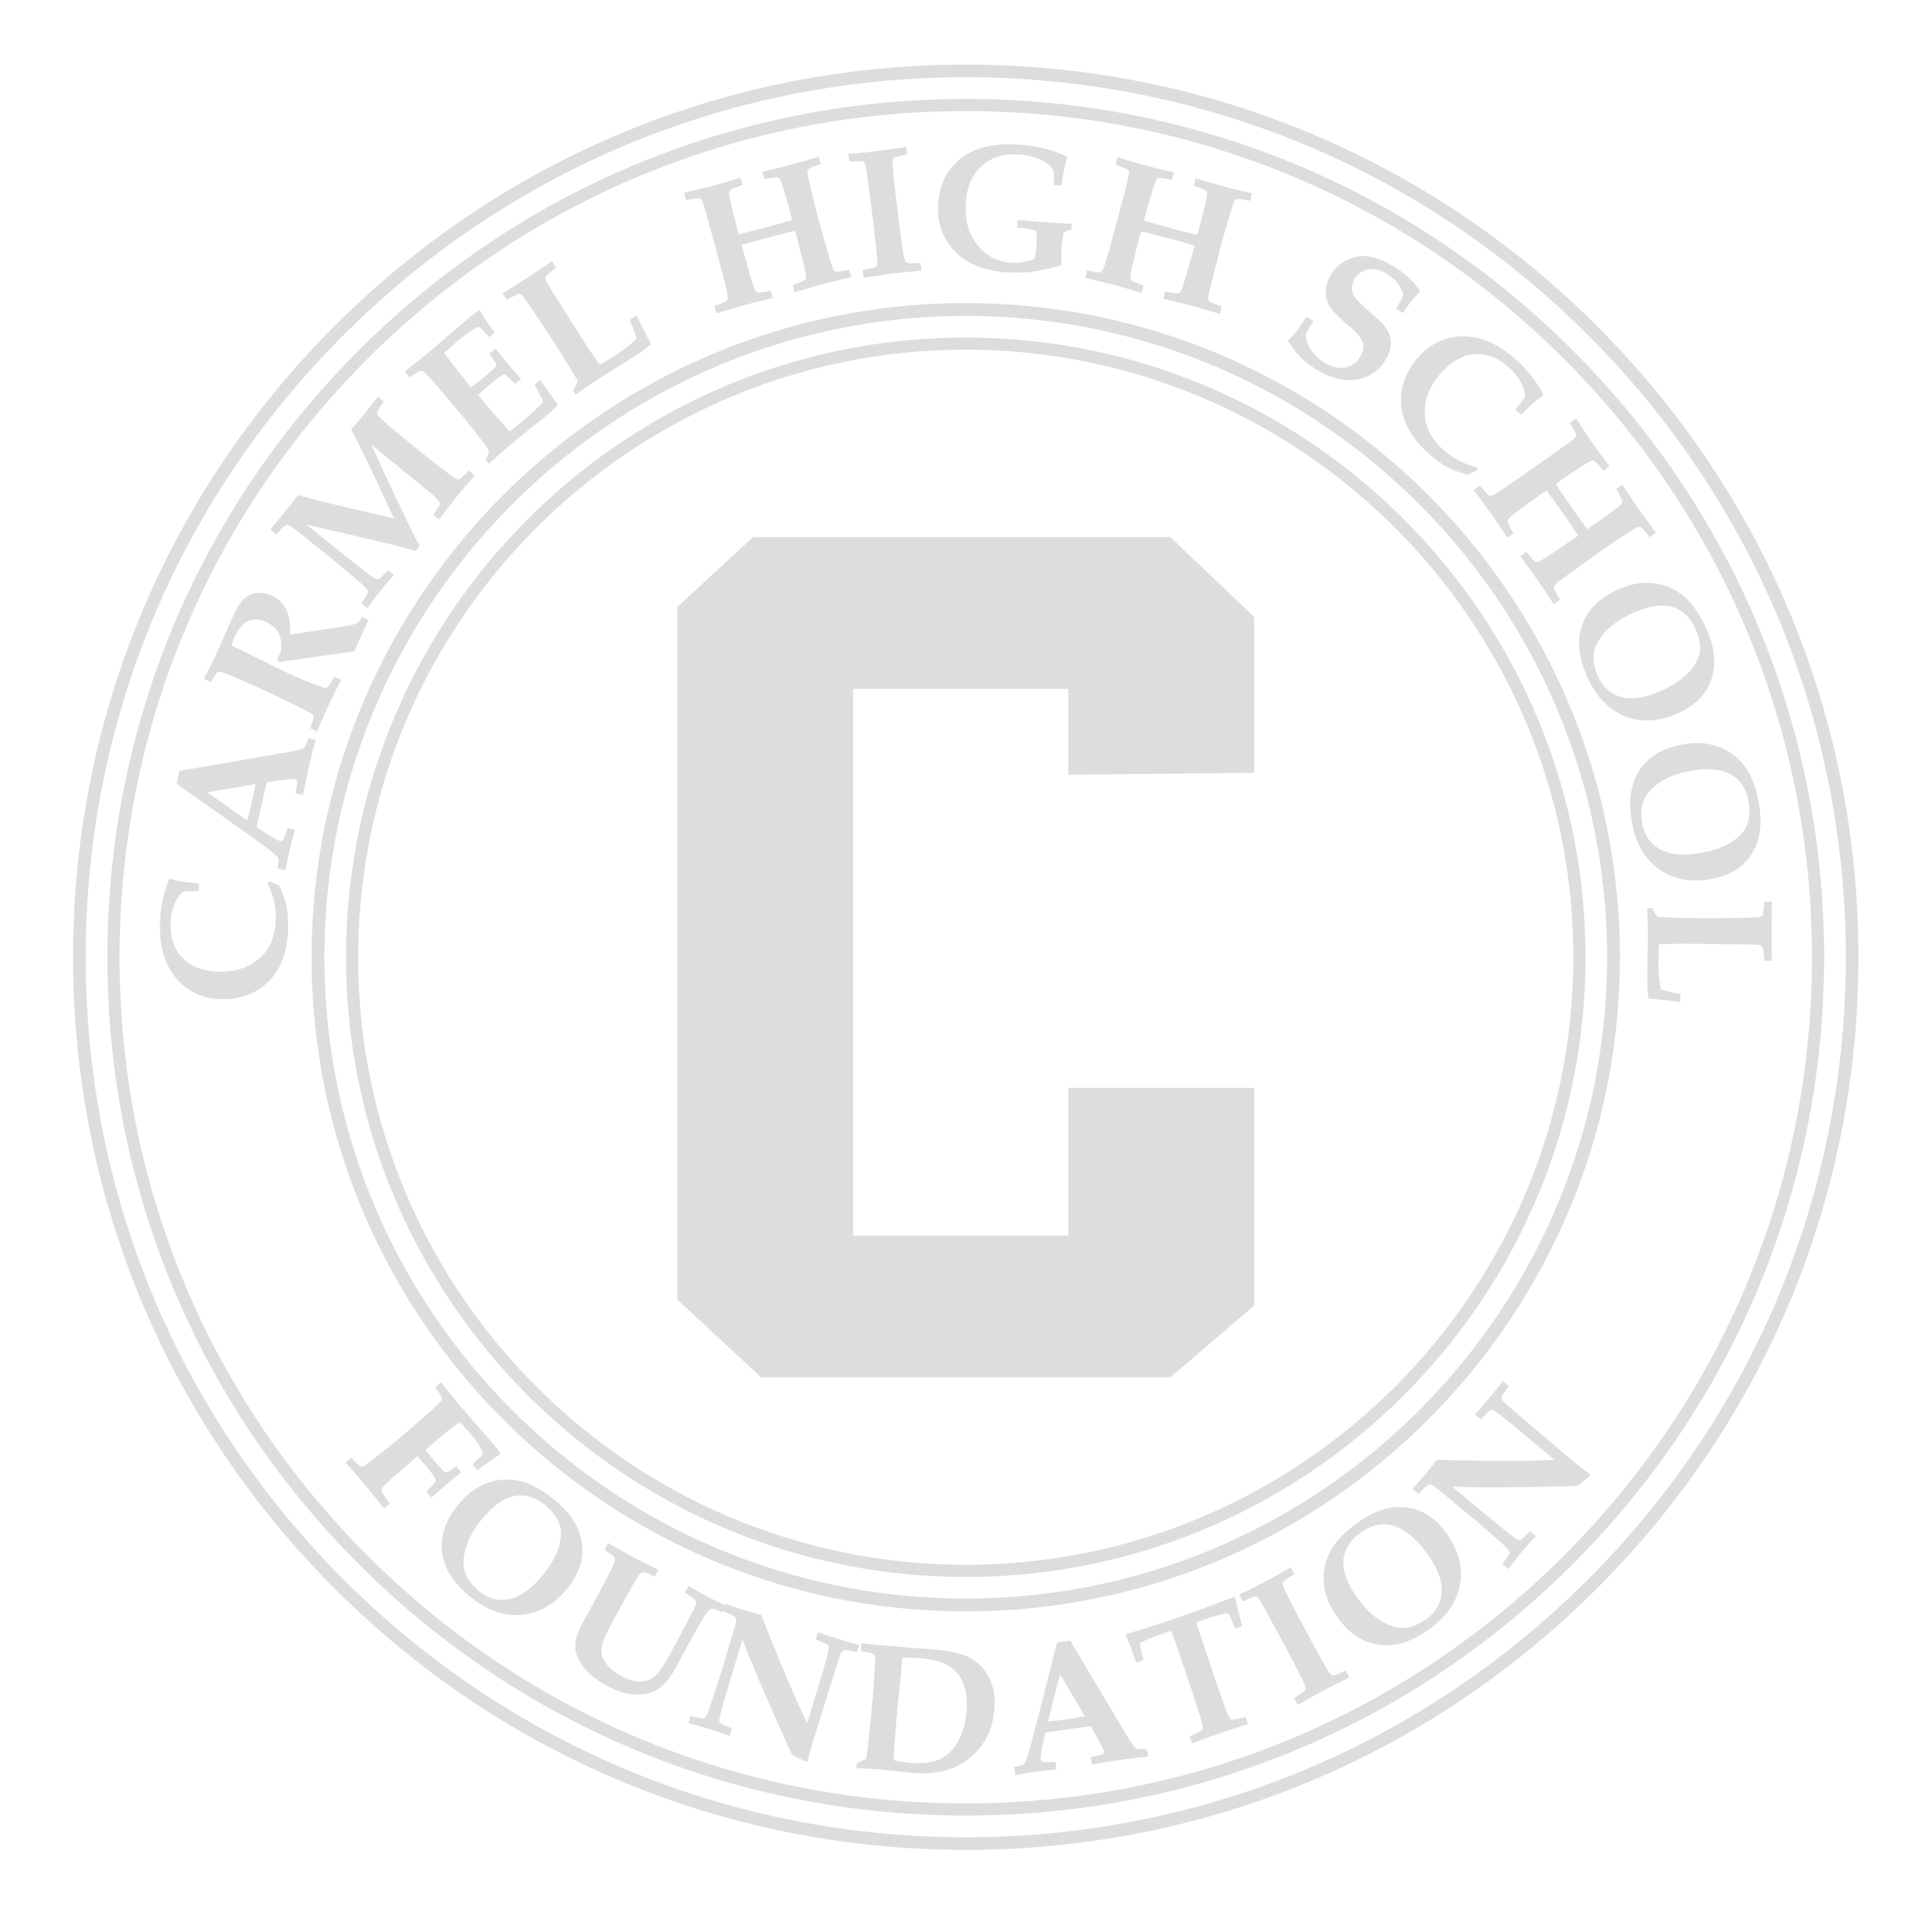 Carmel High School Foundation